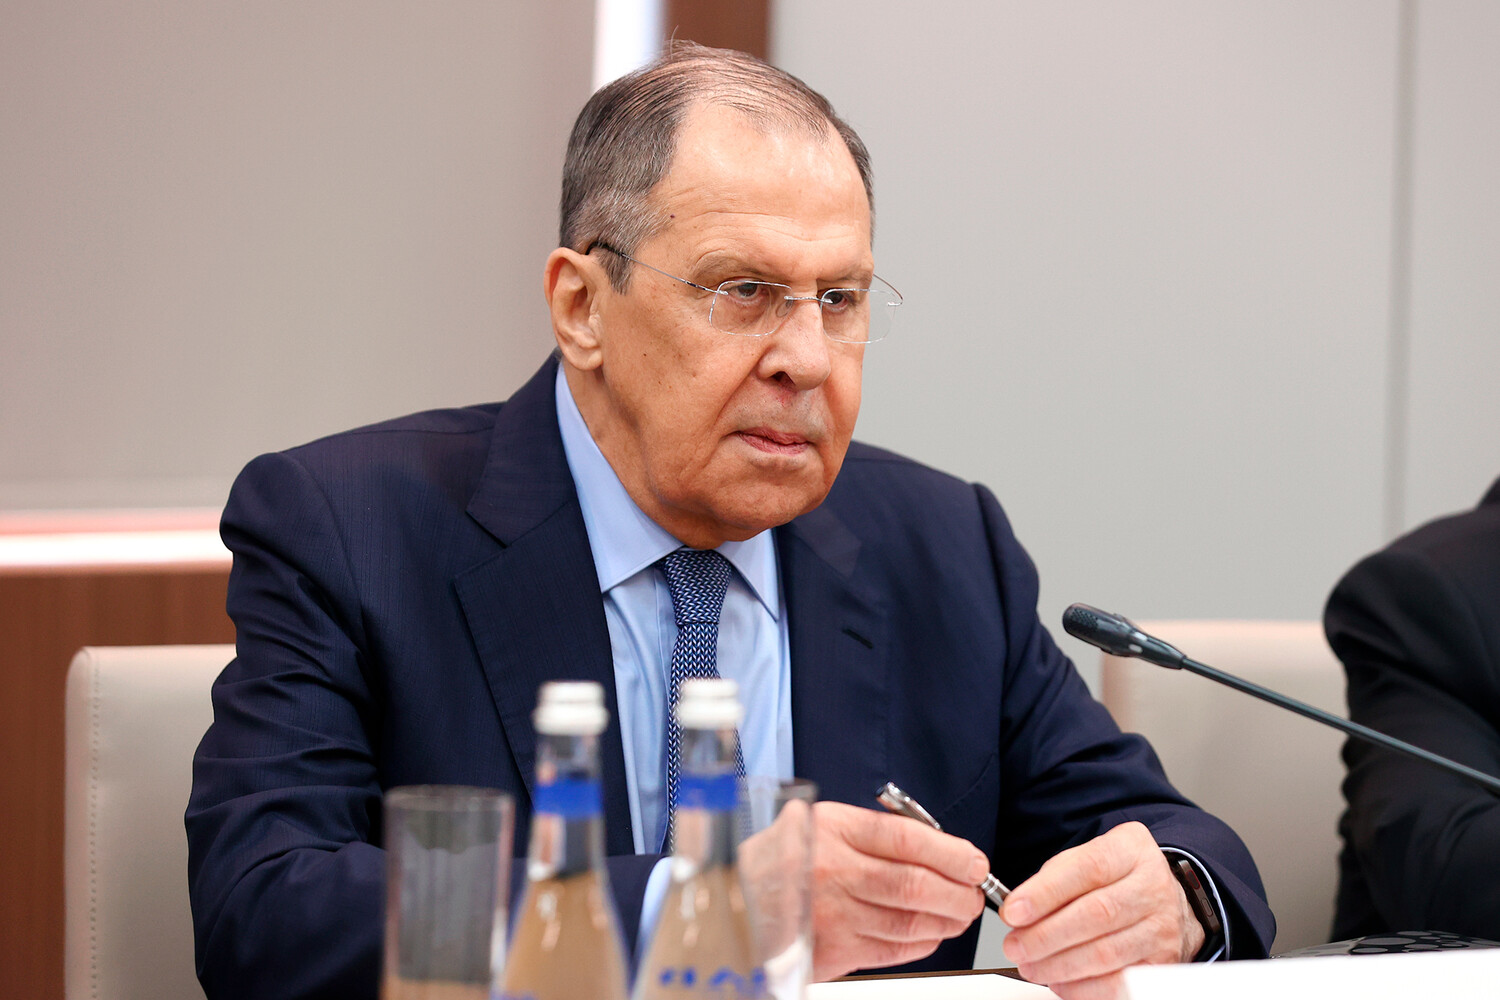 Лавров заявил, что западные страны подменили дипломатию односторонними санкциями